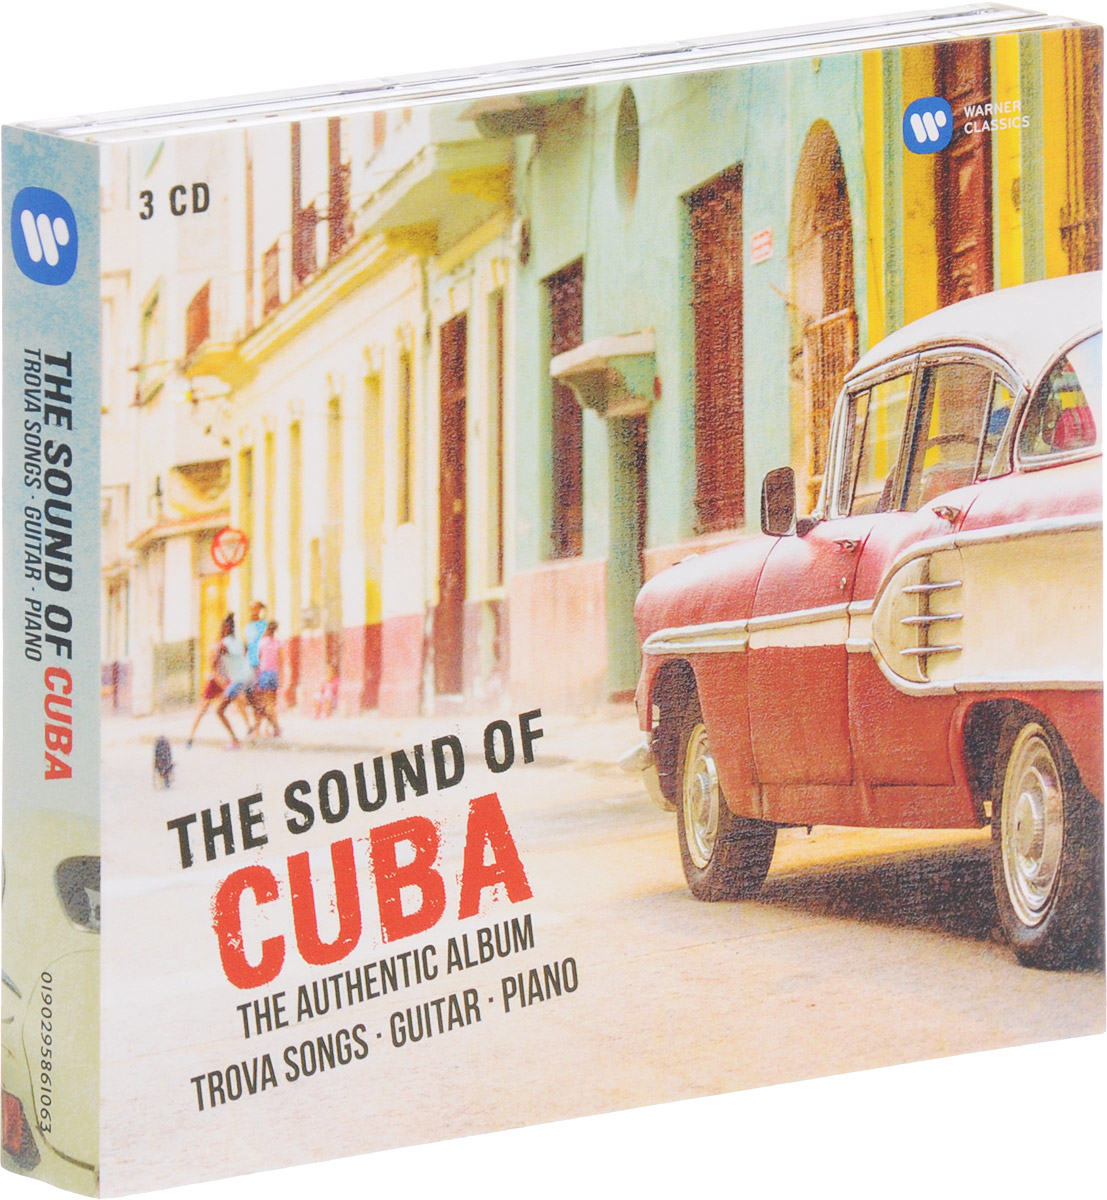 The Sound Of Cuba. The Authentic Album. Trova . Guitar. Piano (3 CD)